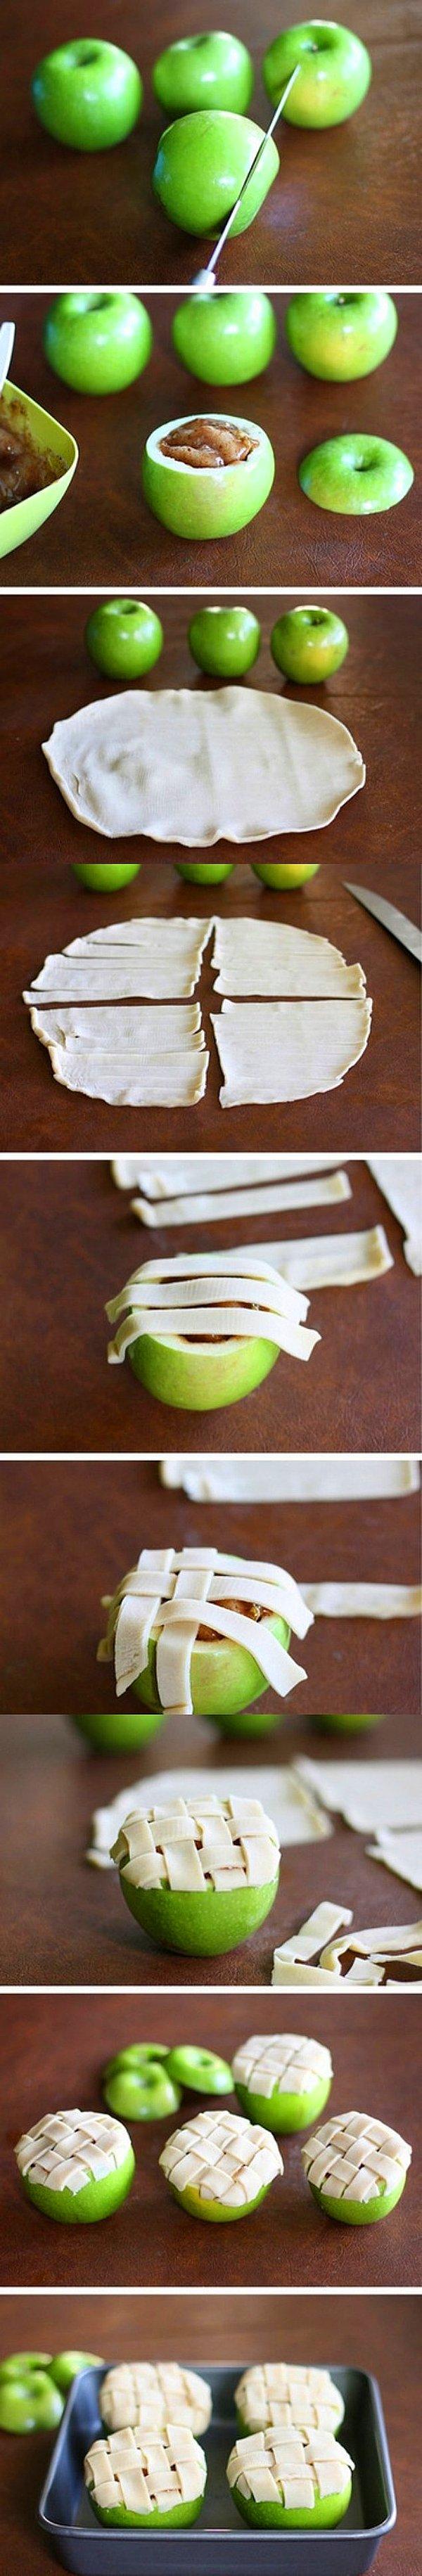 18. Elmalı paya yeni bir boyut kazandırmak için tek ihtiyacınız elma!